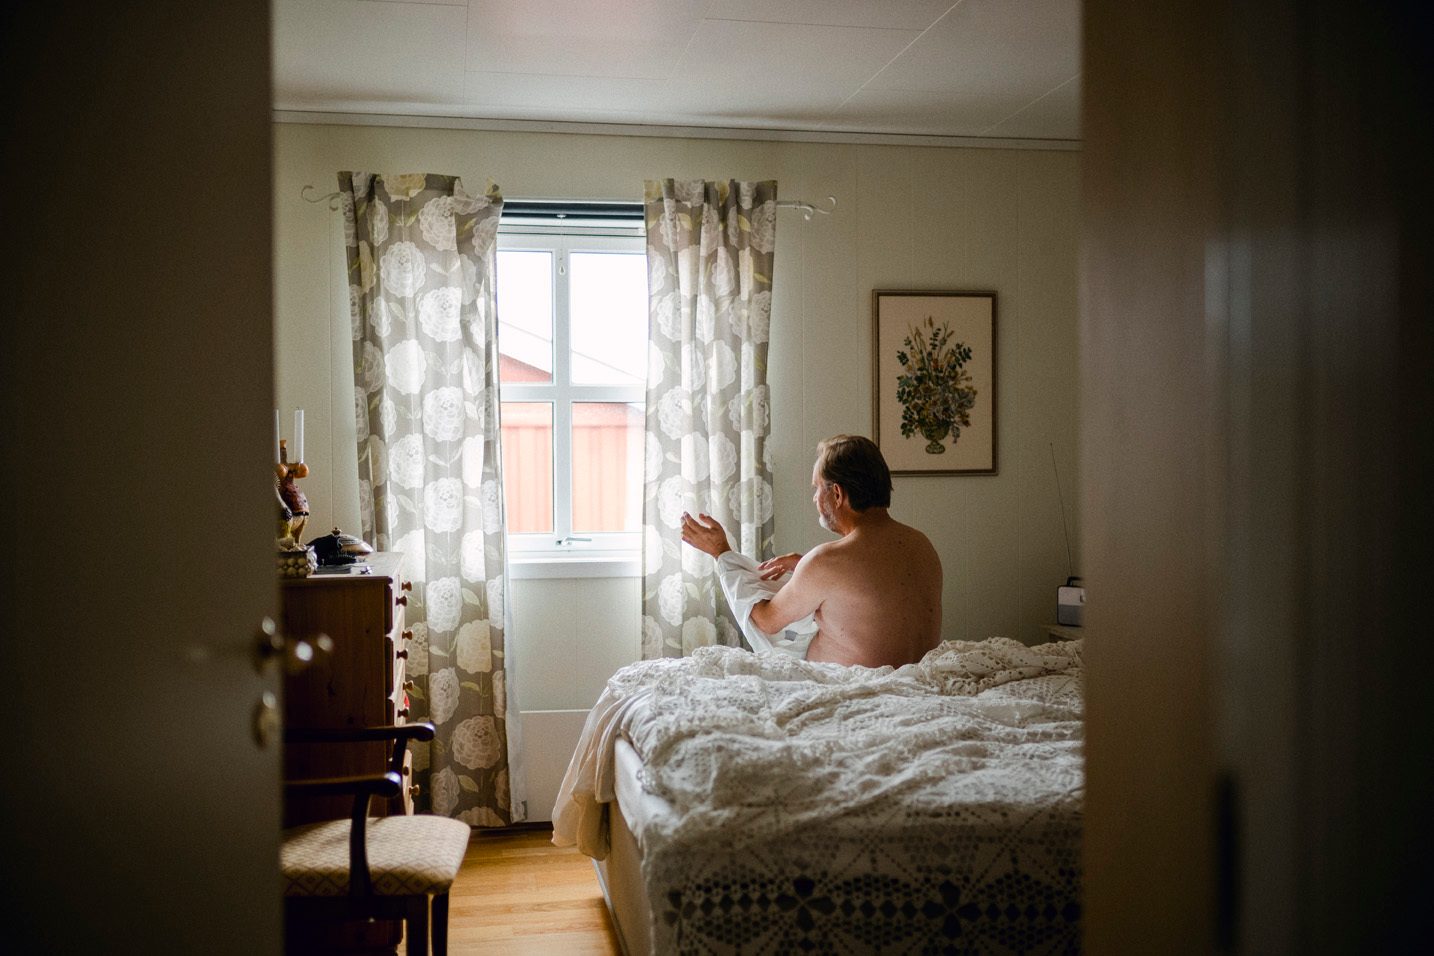 En mann sitter p&#xE5; seng med hvitt heklet sengeteppe og tar p&#xE5; seg skjorte. Bildet er tatt bakfra, med vindu og maleri p&#xE5; veggen